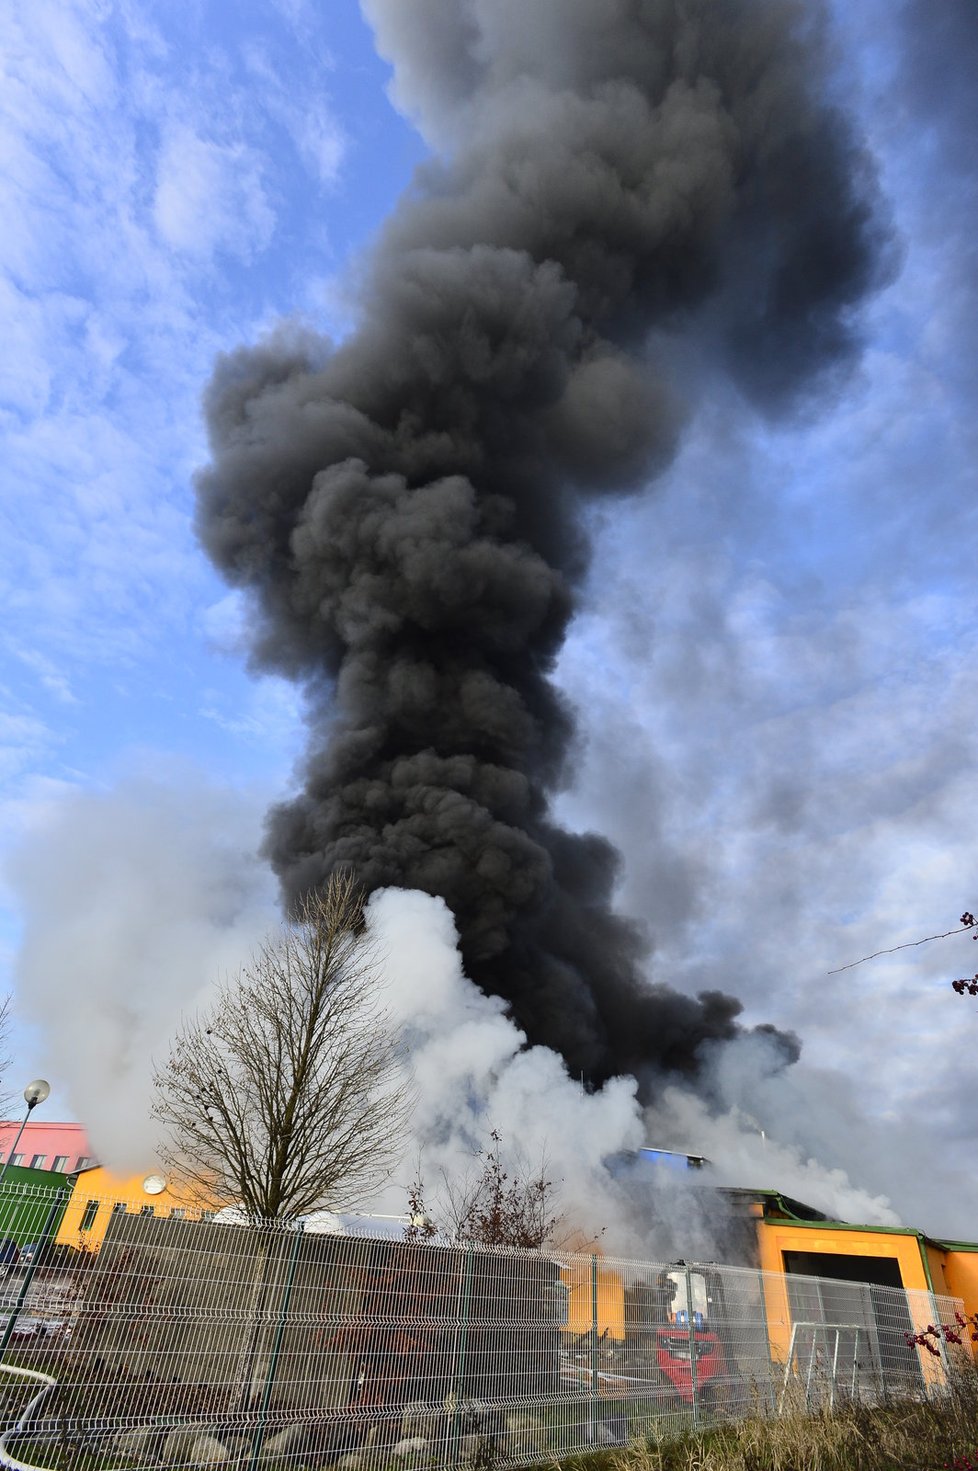 Výbuch rozmetal ve čtvrtek ráno plnírnu sprejů firmy Agma v Turnově. Exploze zabila ženu a dalších pět lidí poranila.